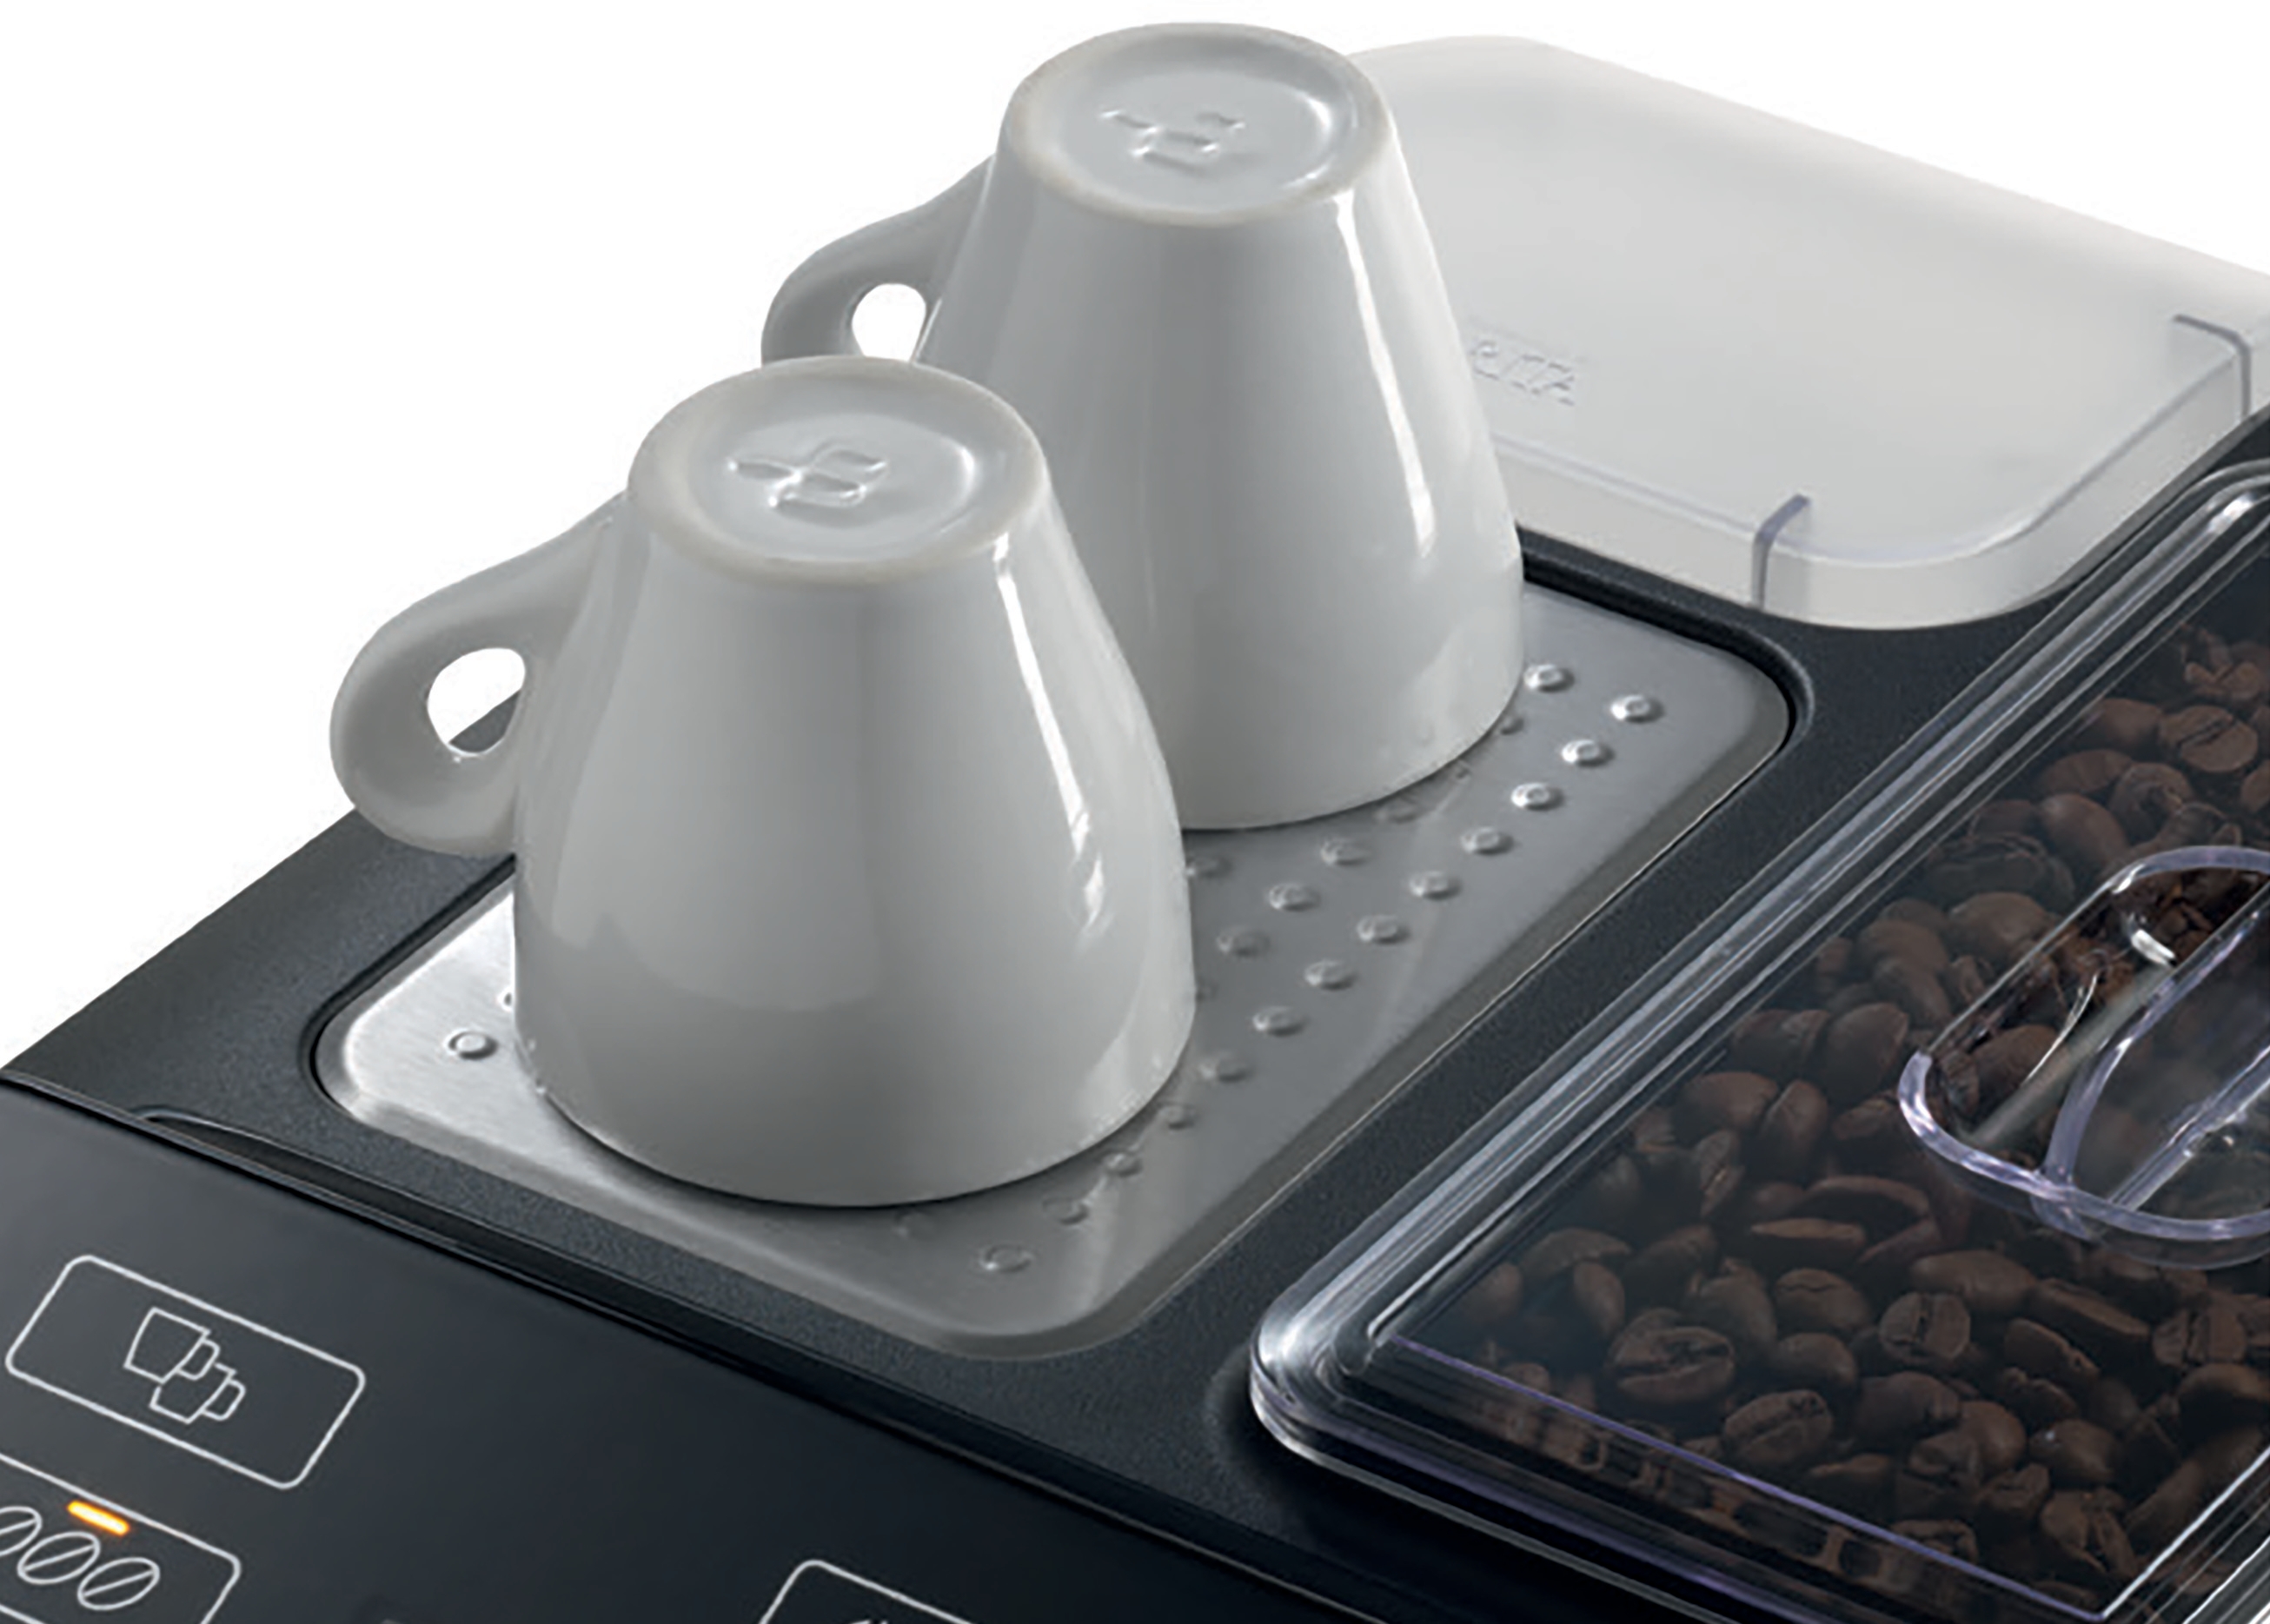 Aparat za kafu TIS30521RW Automatizovan aparat, Verocup 500, 1300 W